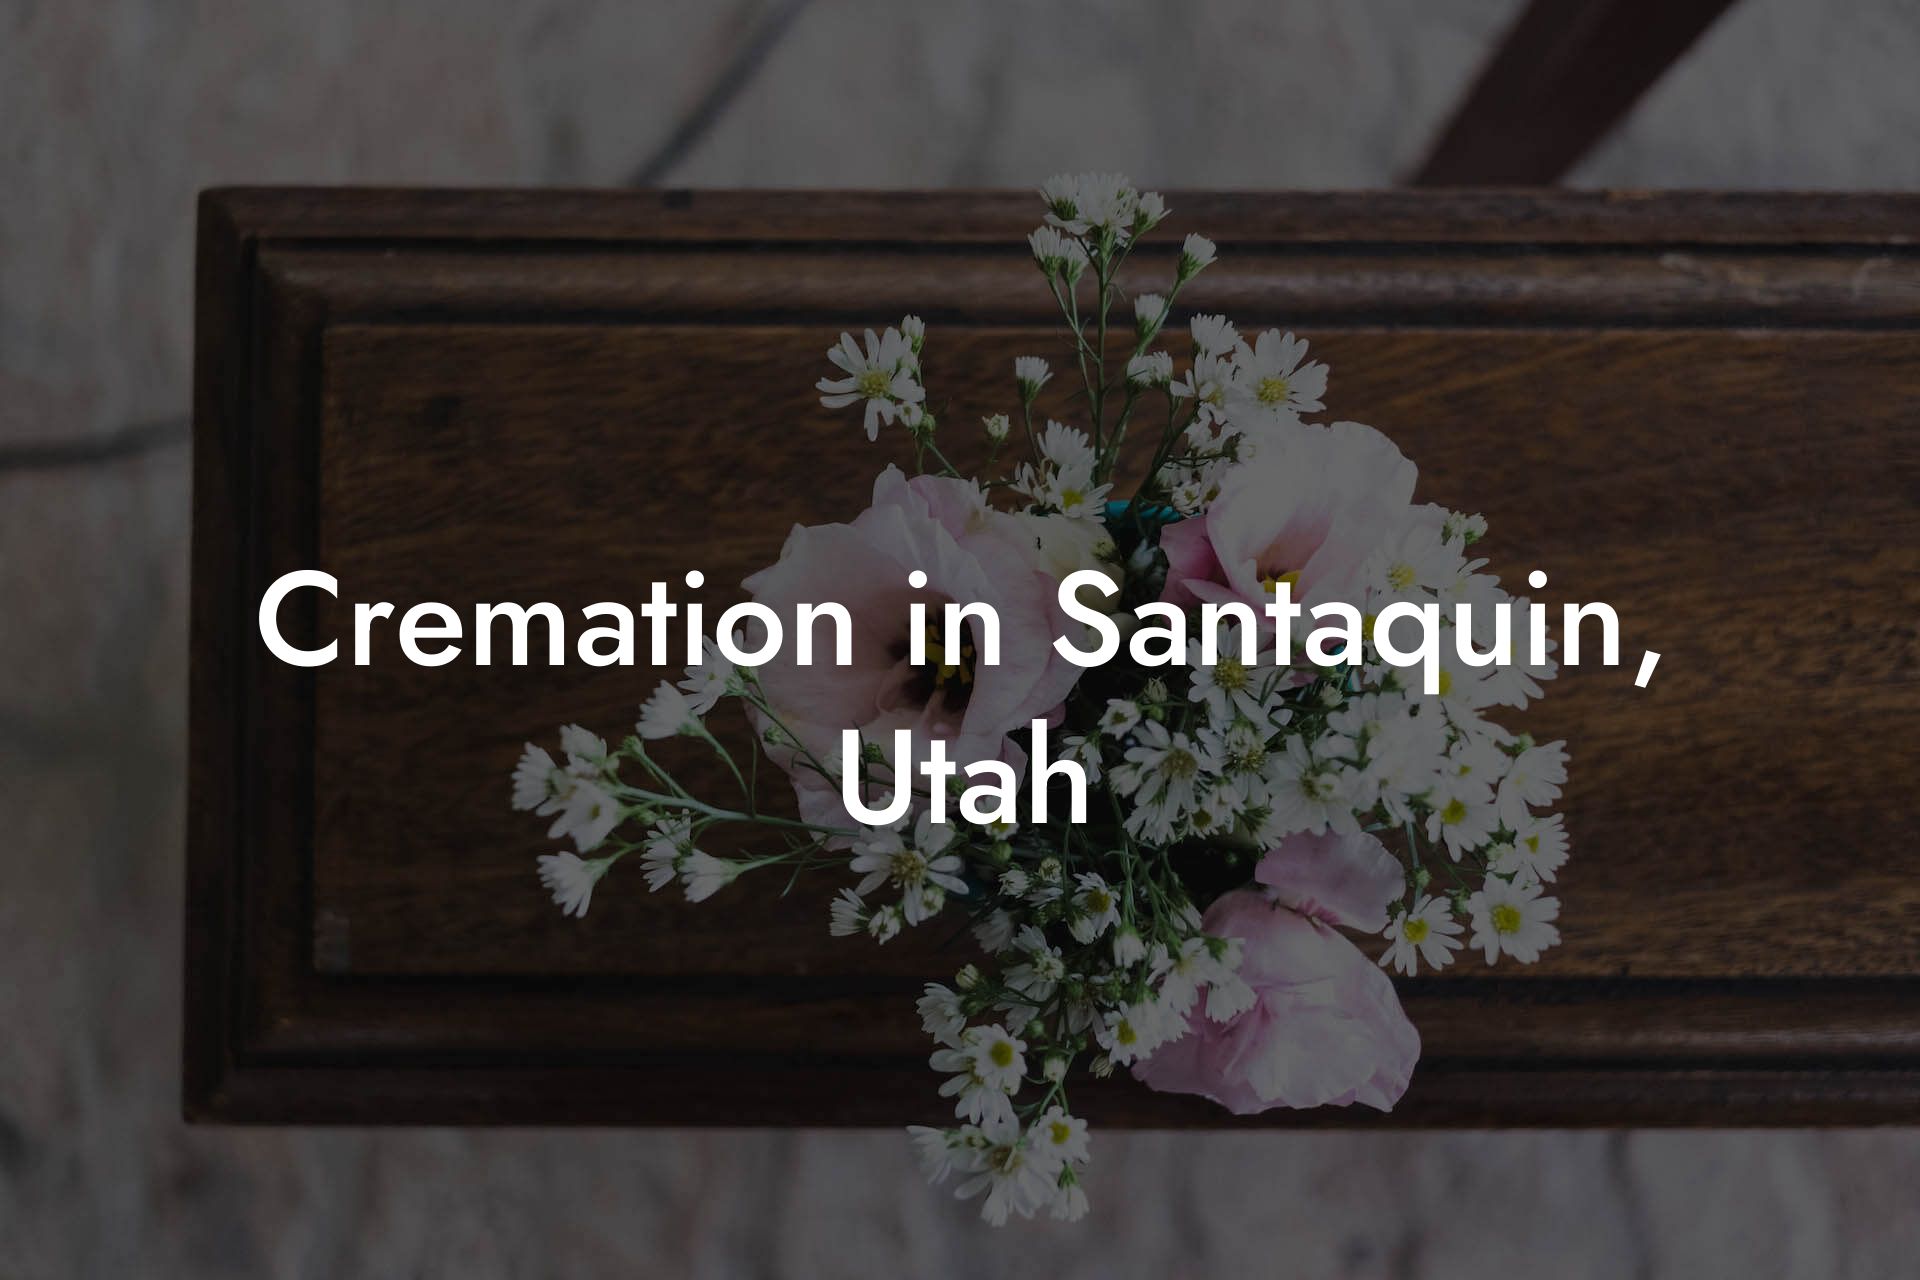 Cremation in Santaquin, Utah